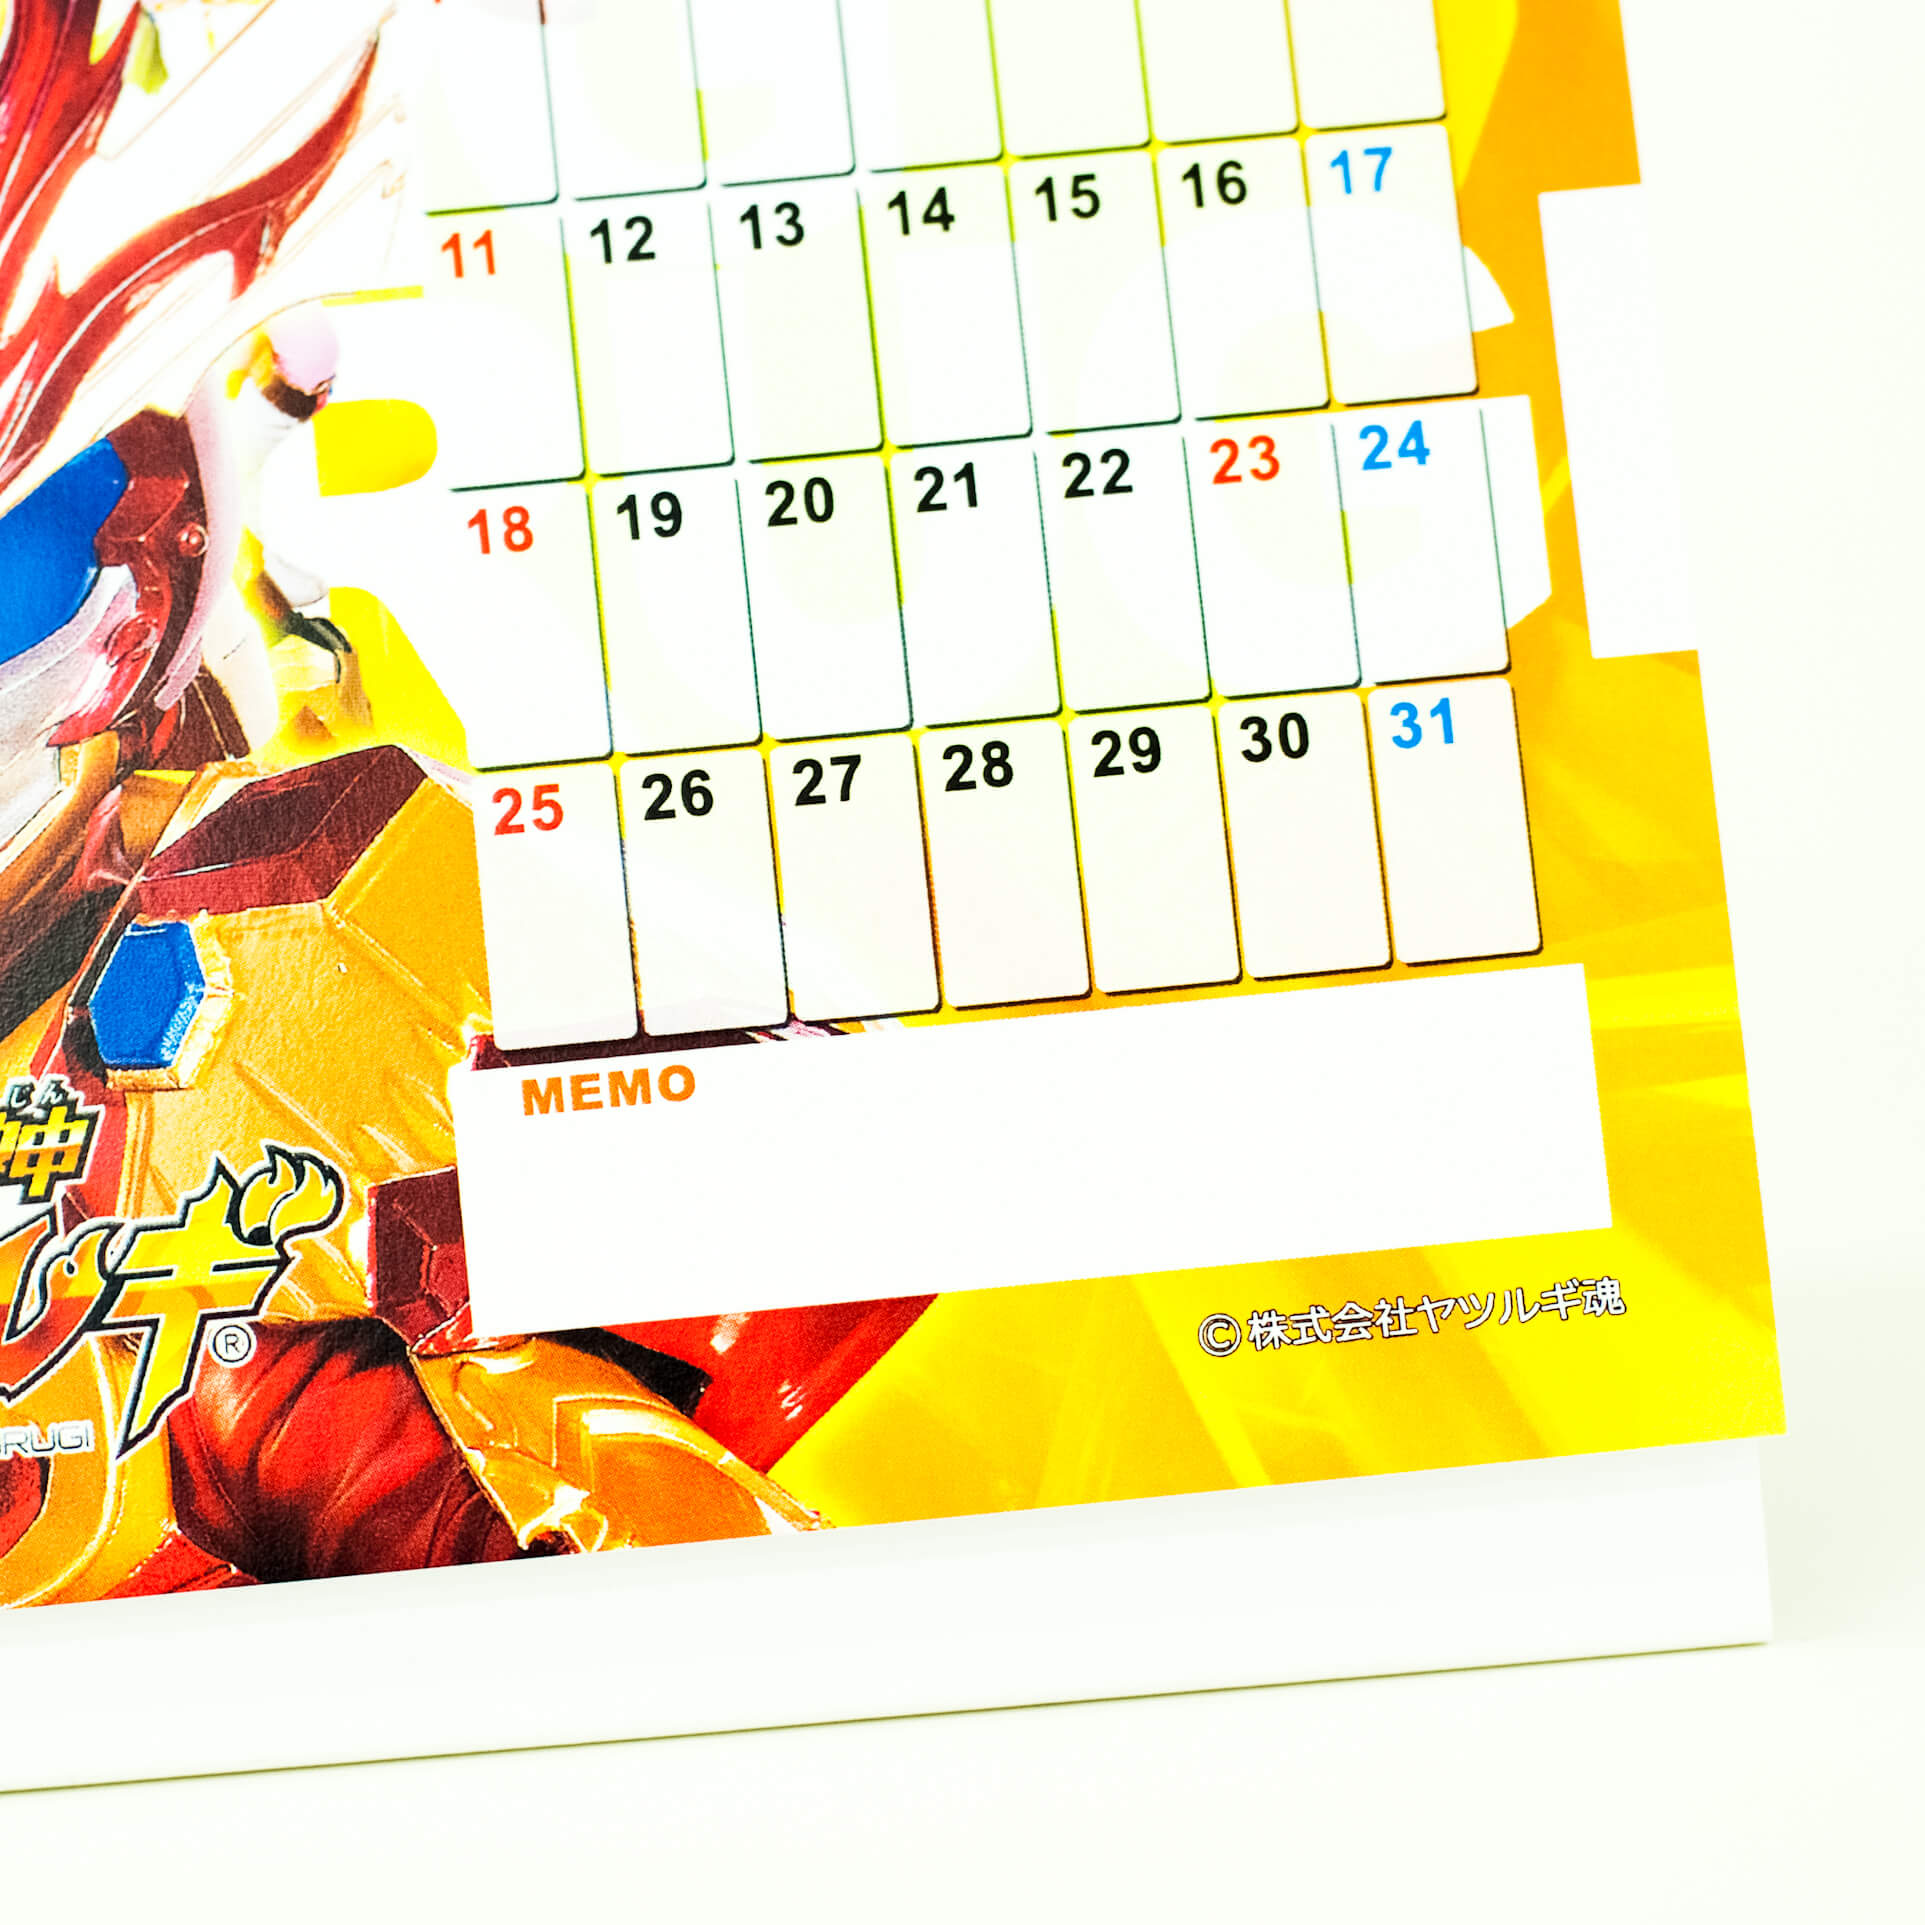 「株式会社ヤツルギ魂 様」製作のオリジナルカレンダー ギャラリー写真3